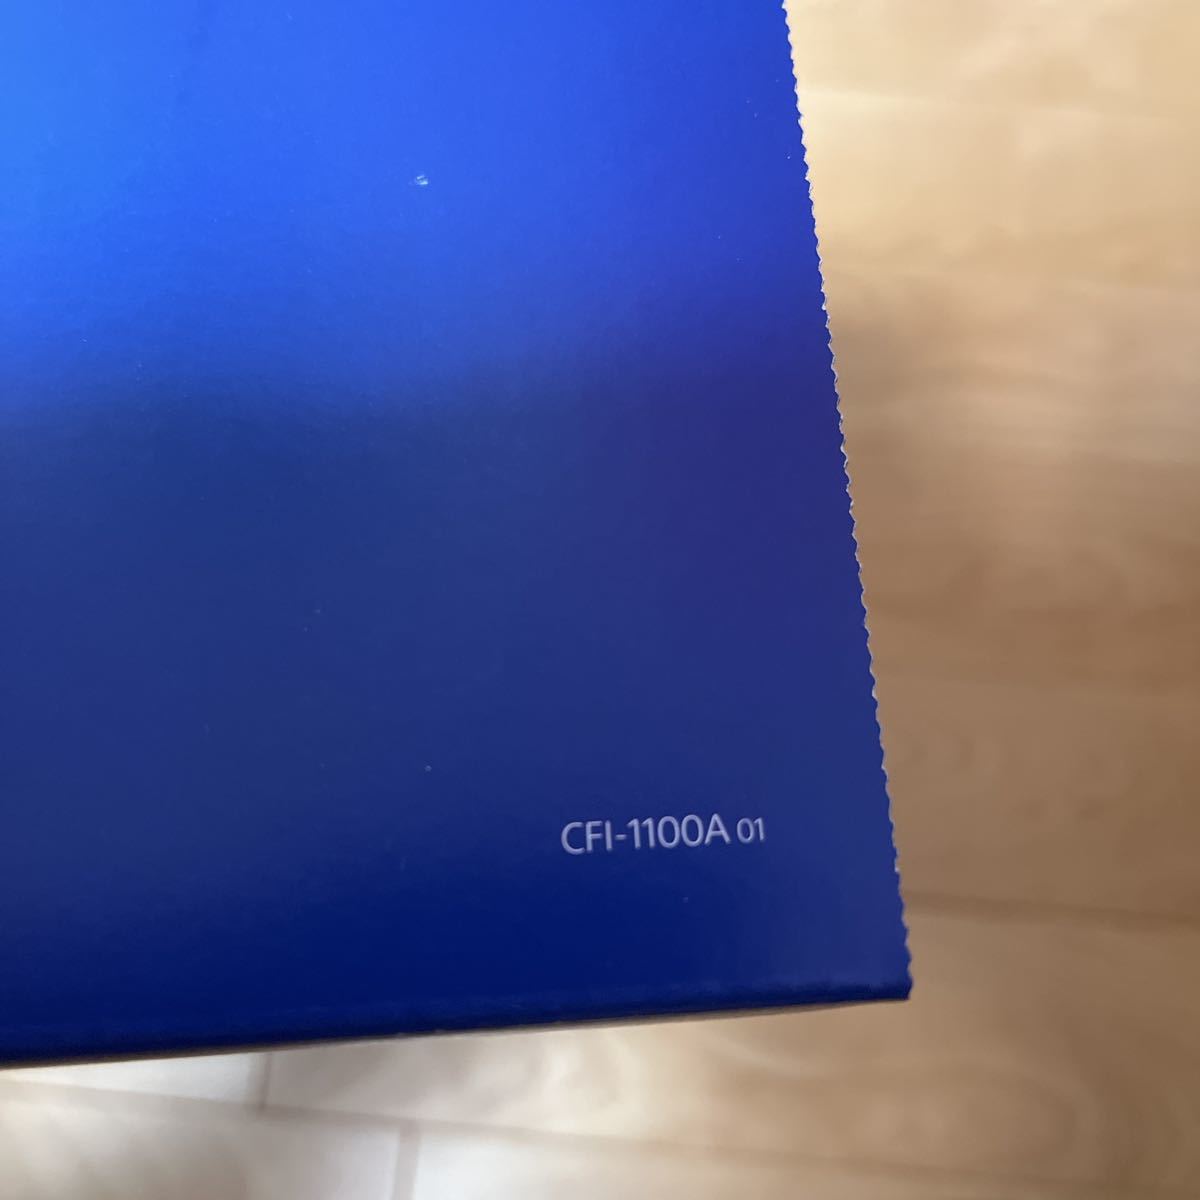 【新品 未使用 】PlayStation5 本体 プレイステーション5 CFI-1100A01 ディスクドライブ搭載モデル PS5 _画像3